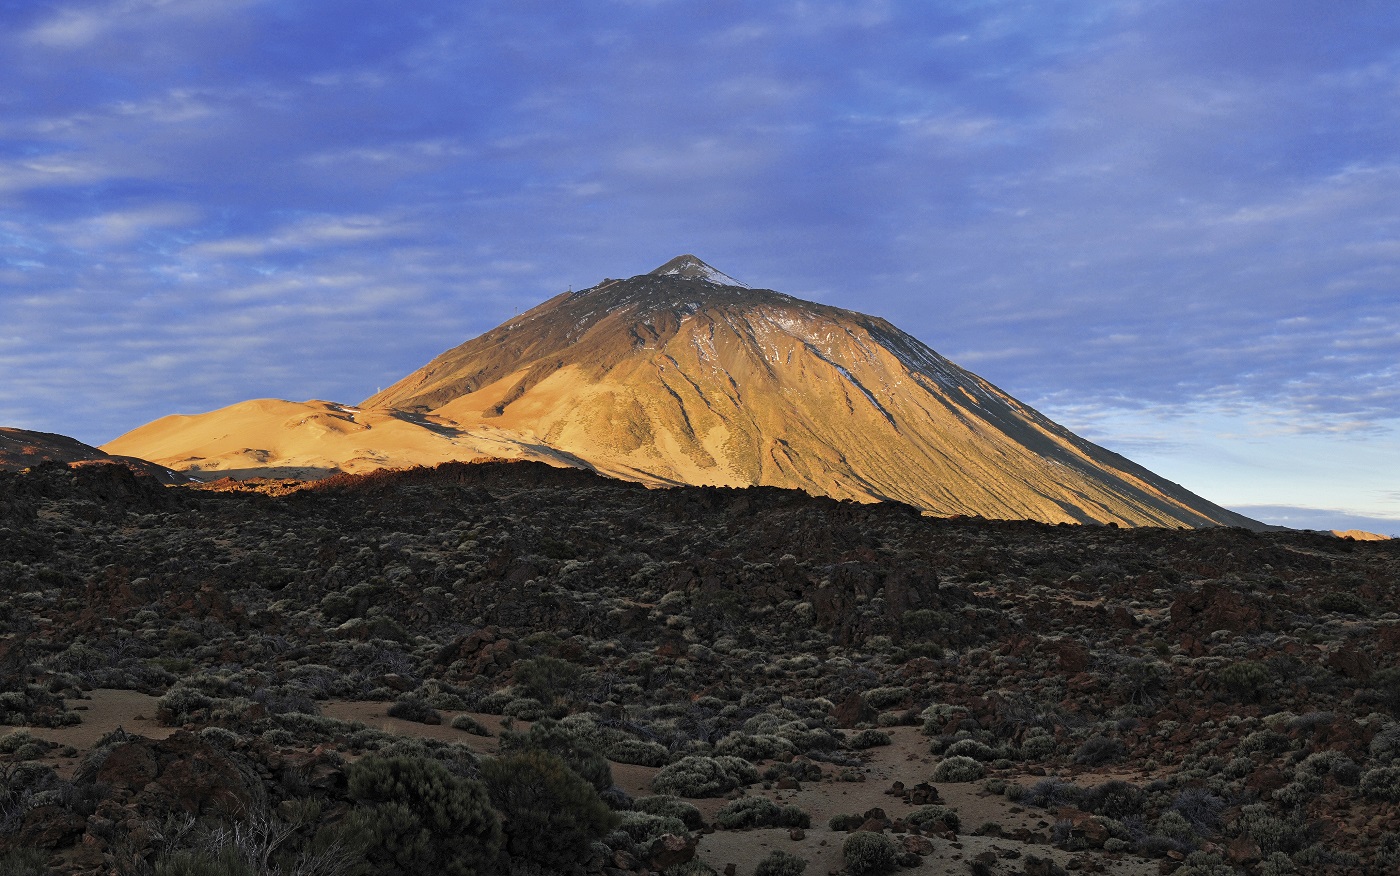 Rukovodstvo-po-voshozhdeniyu-na-vulkan-Tejde-na-Tenerife